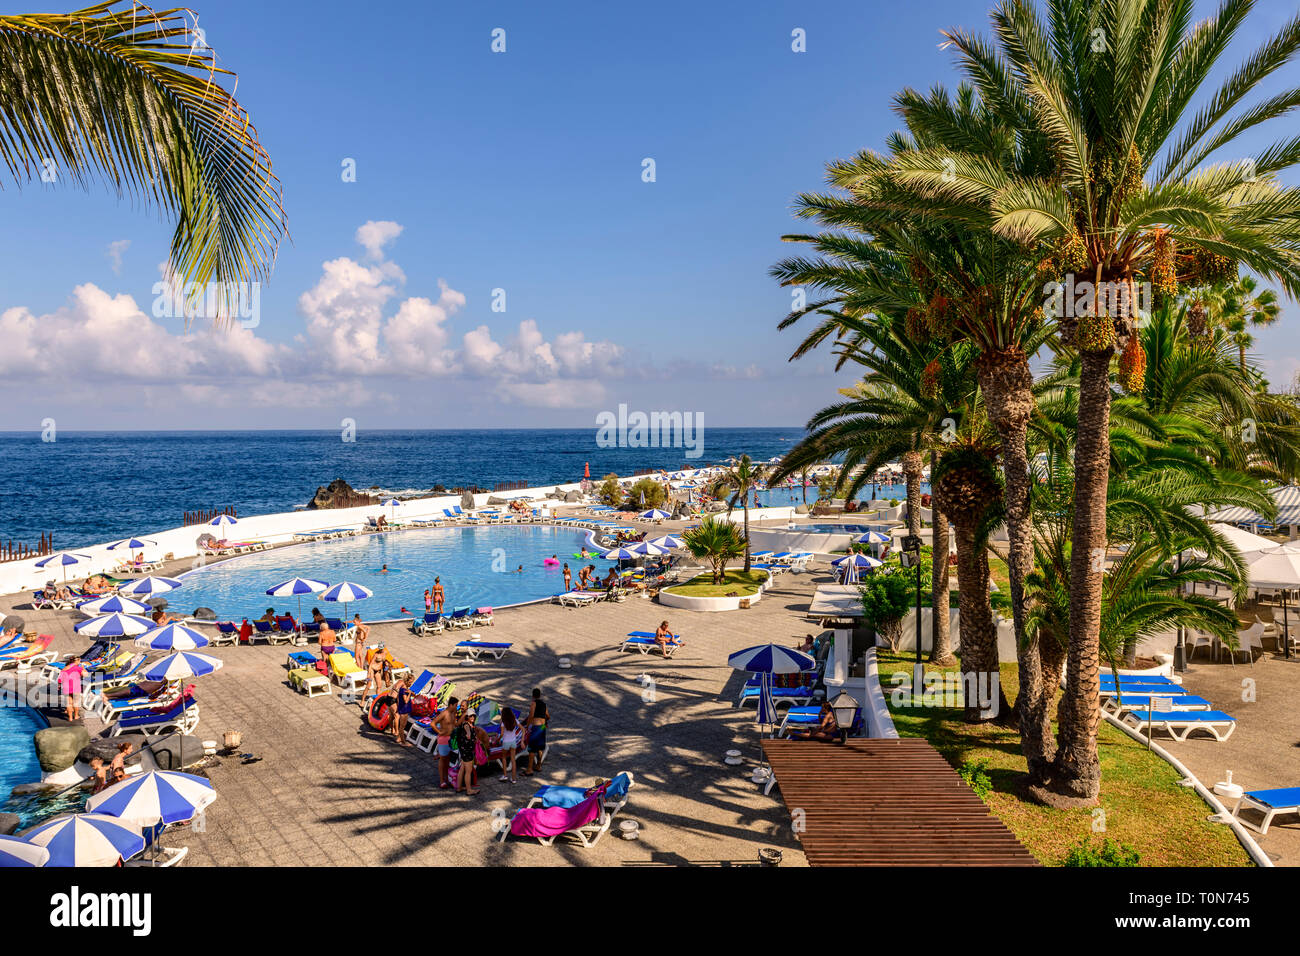 View of the water park, puerto de la cruz, Tenerife Stock Photo - Alamy